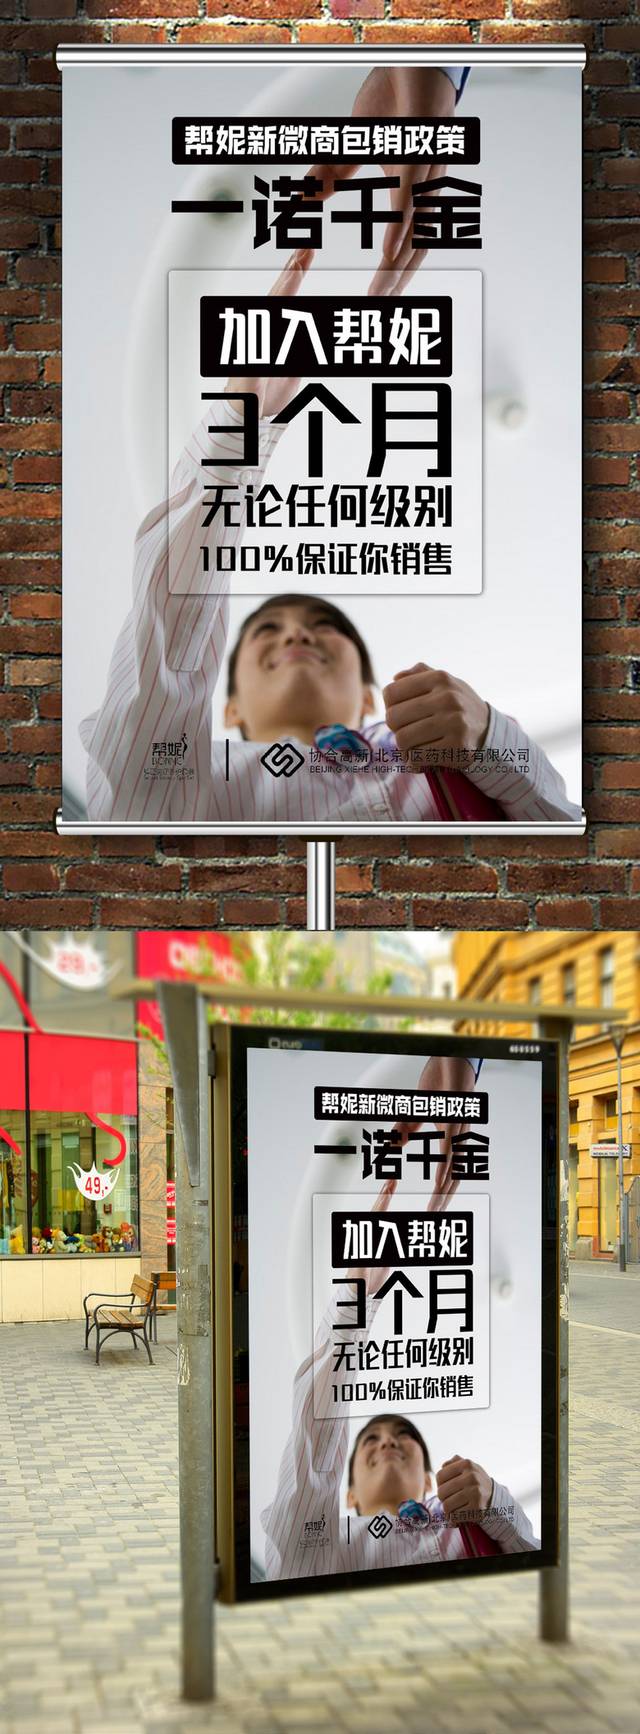 微商营销宣传海报